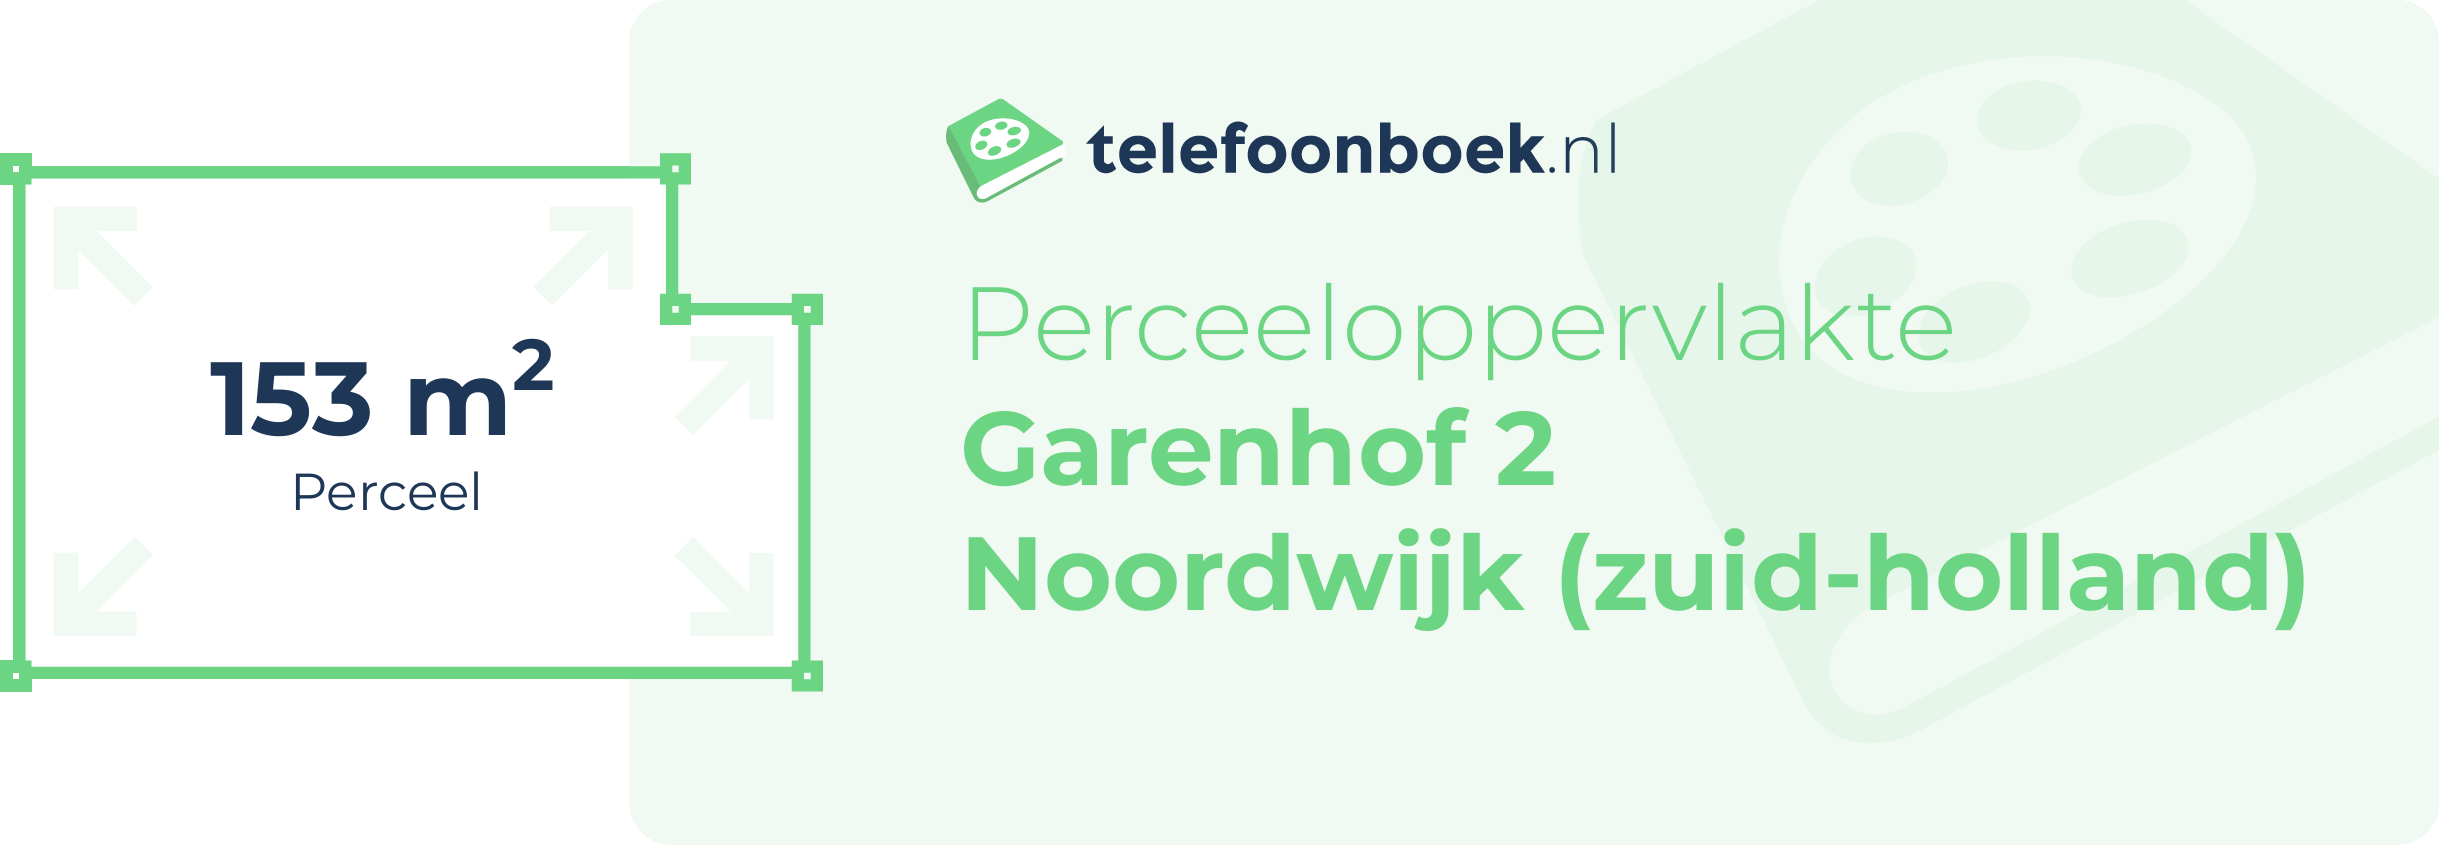 Perceeloppervlakte Garenhof 2 Noordwijk (Zuid-Holland)